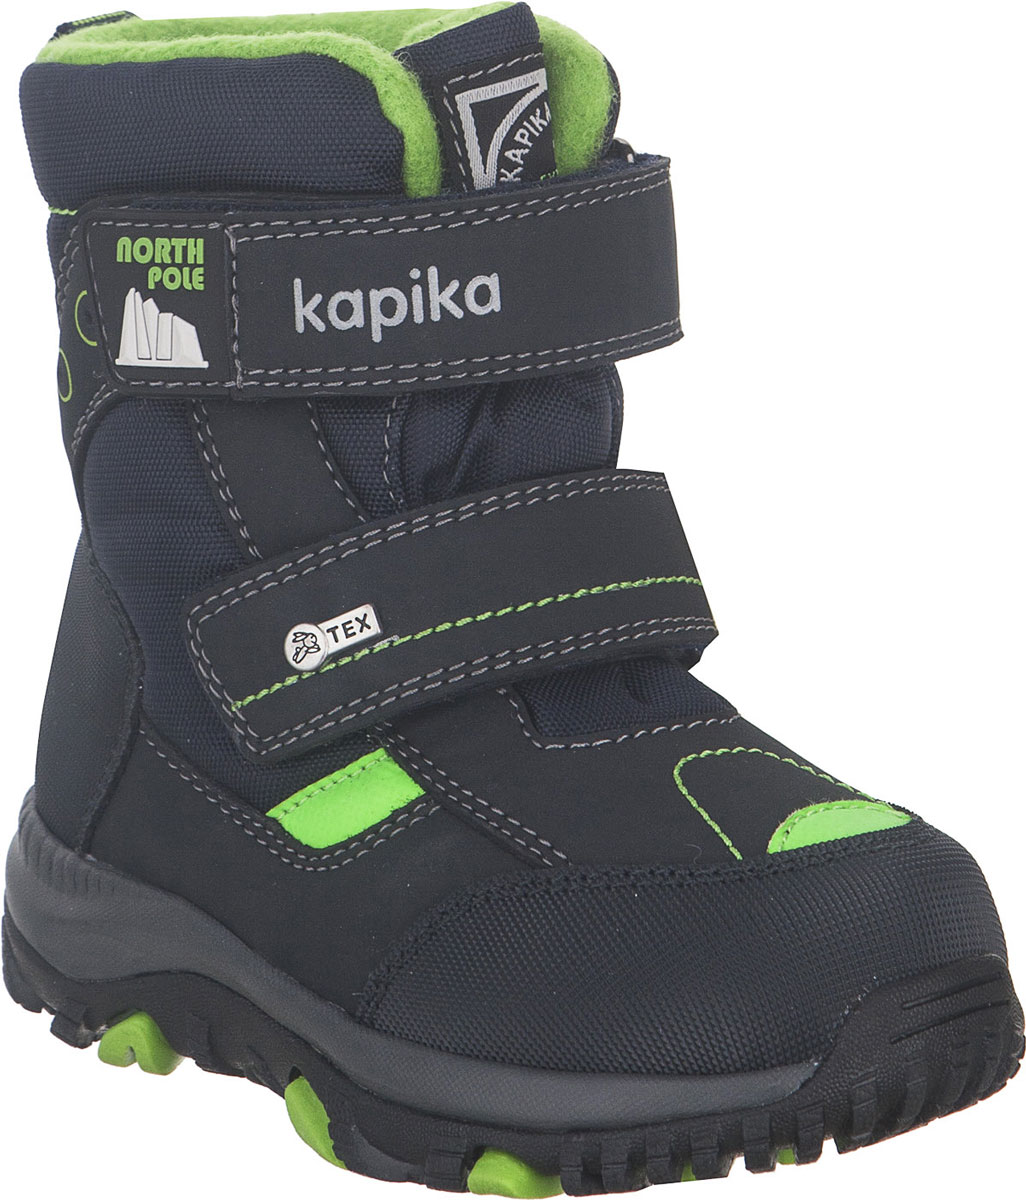 Ботинки для мальчика Kapika, цвет: темно-синий, салатовый. 41228-2. Размер 23